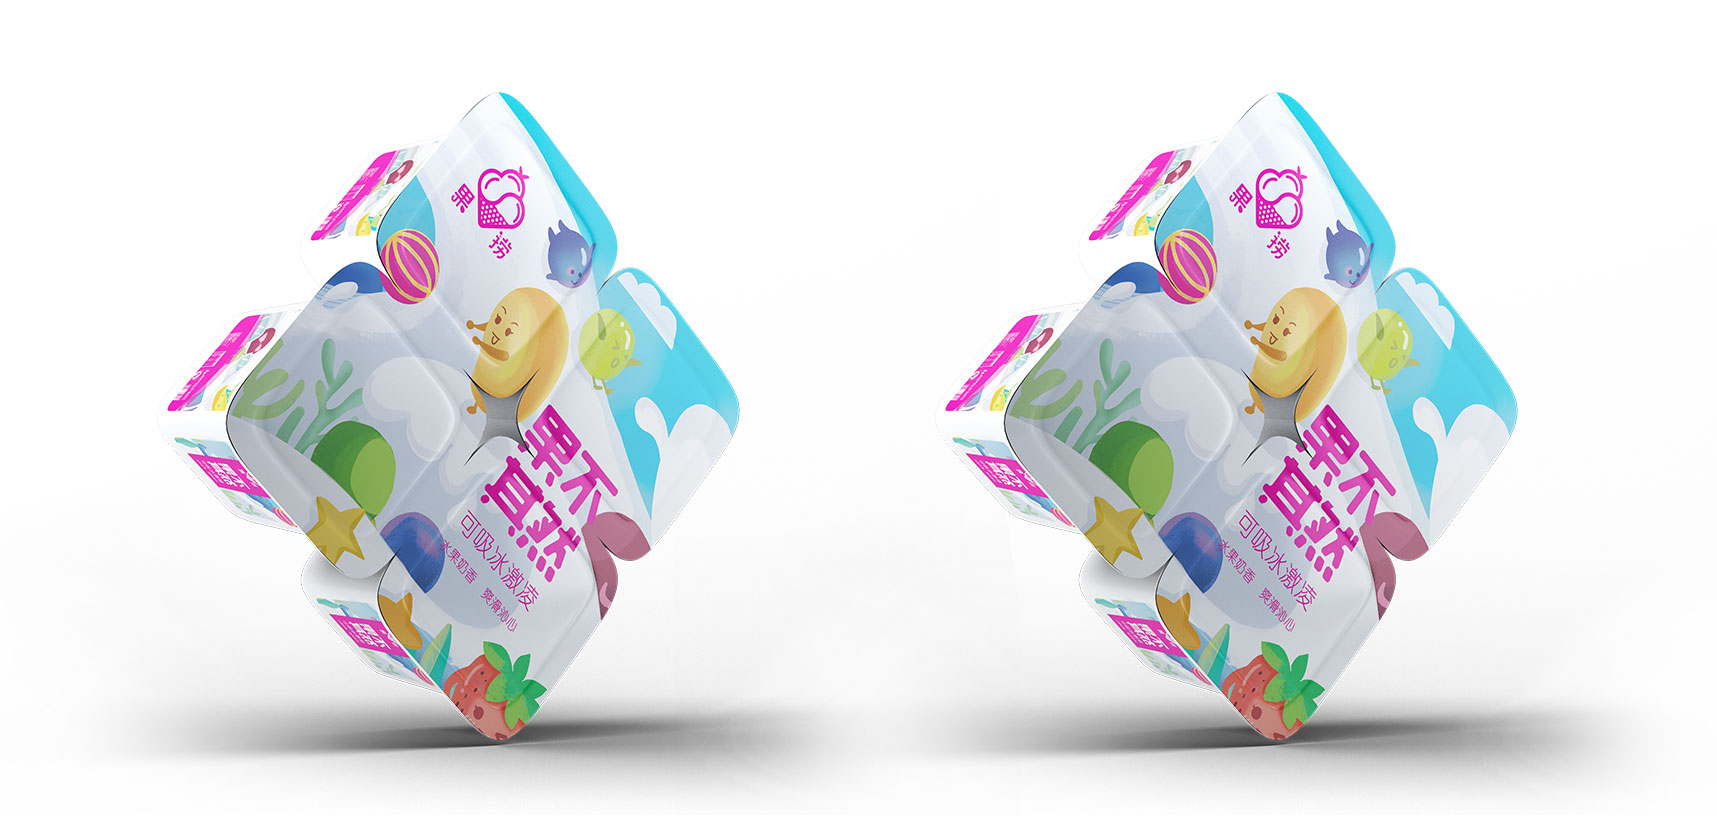 果捞品牌产品包装盒设计4